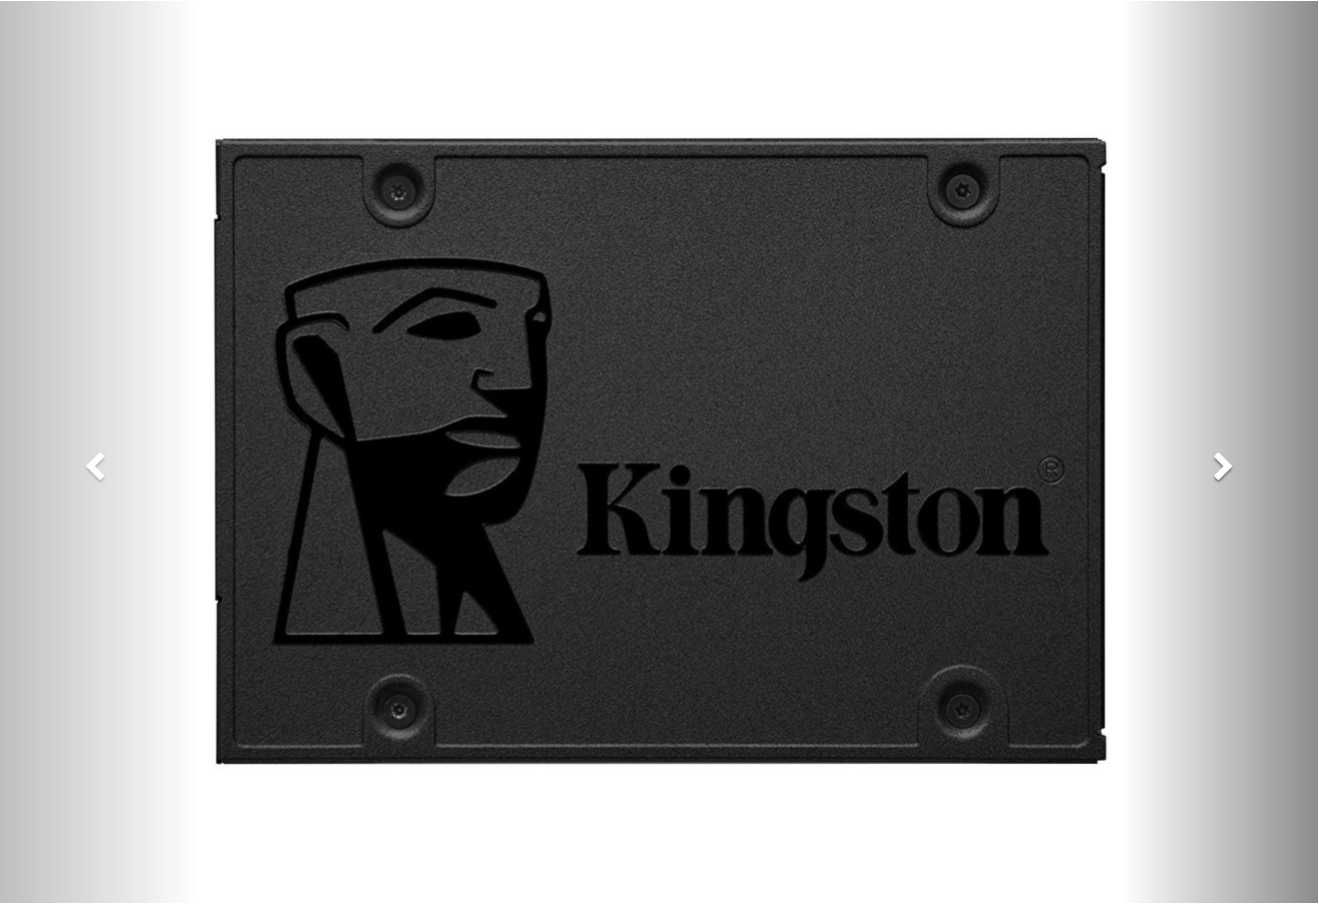 SSD Kingston A400 480GB SATA-III 2.5